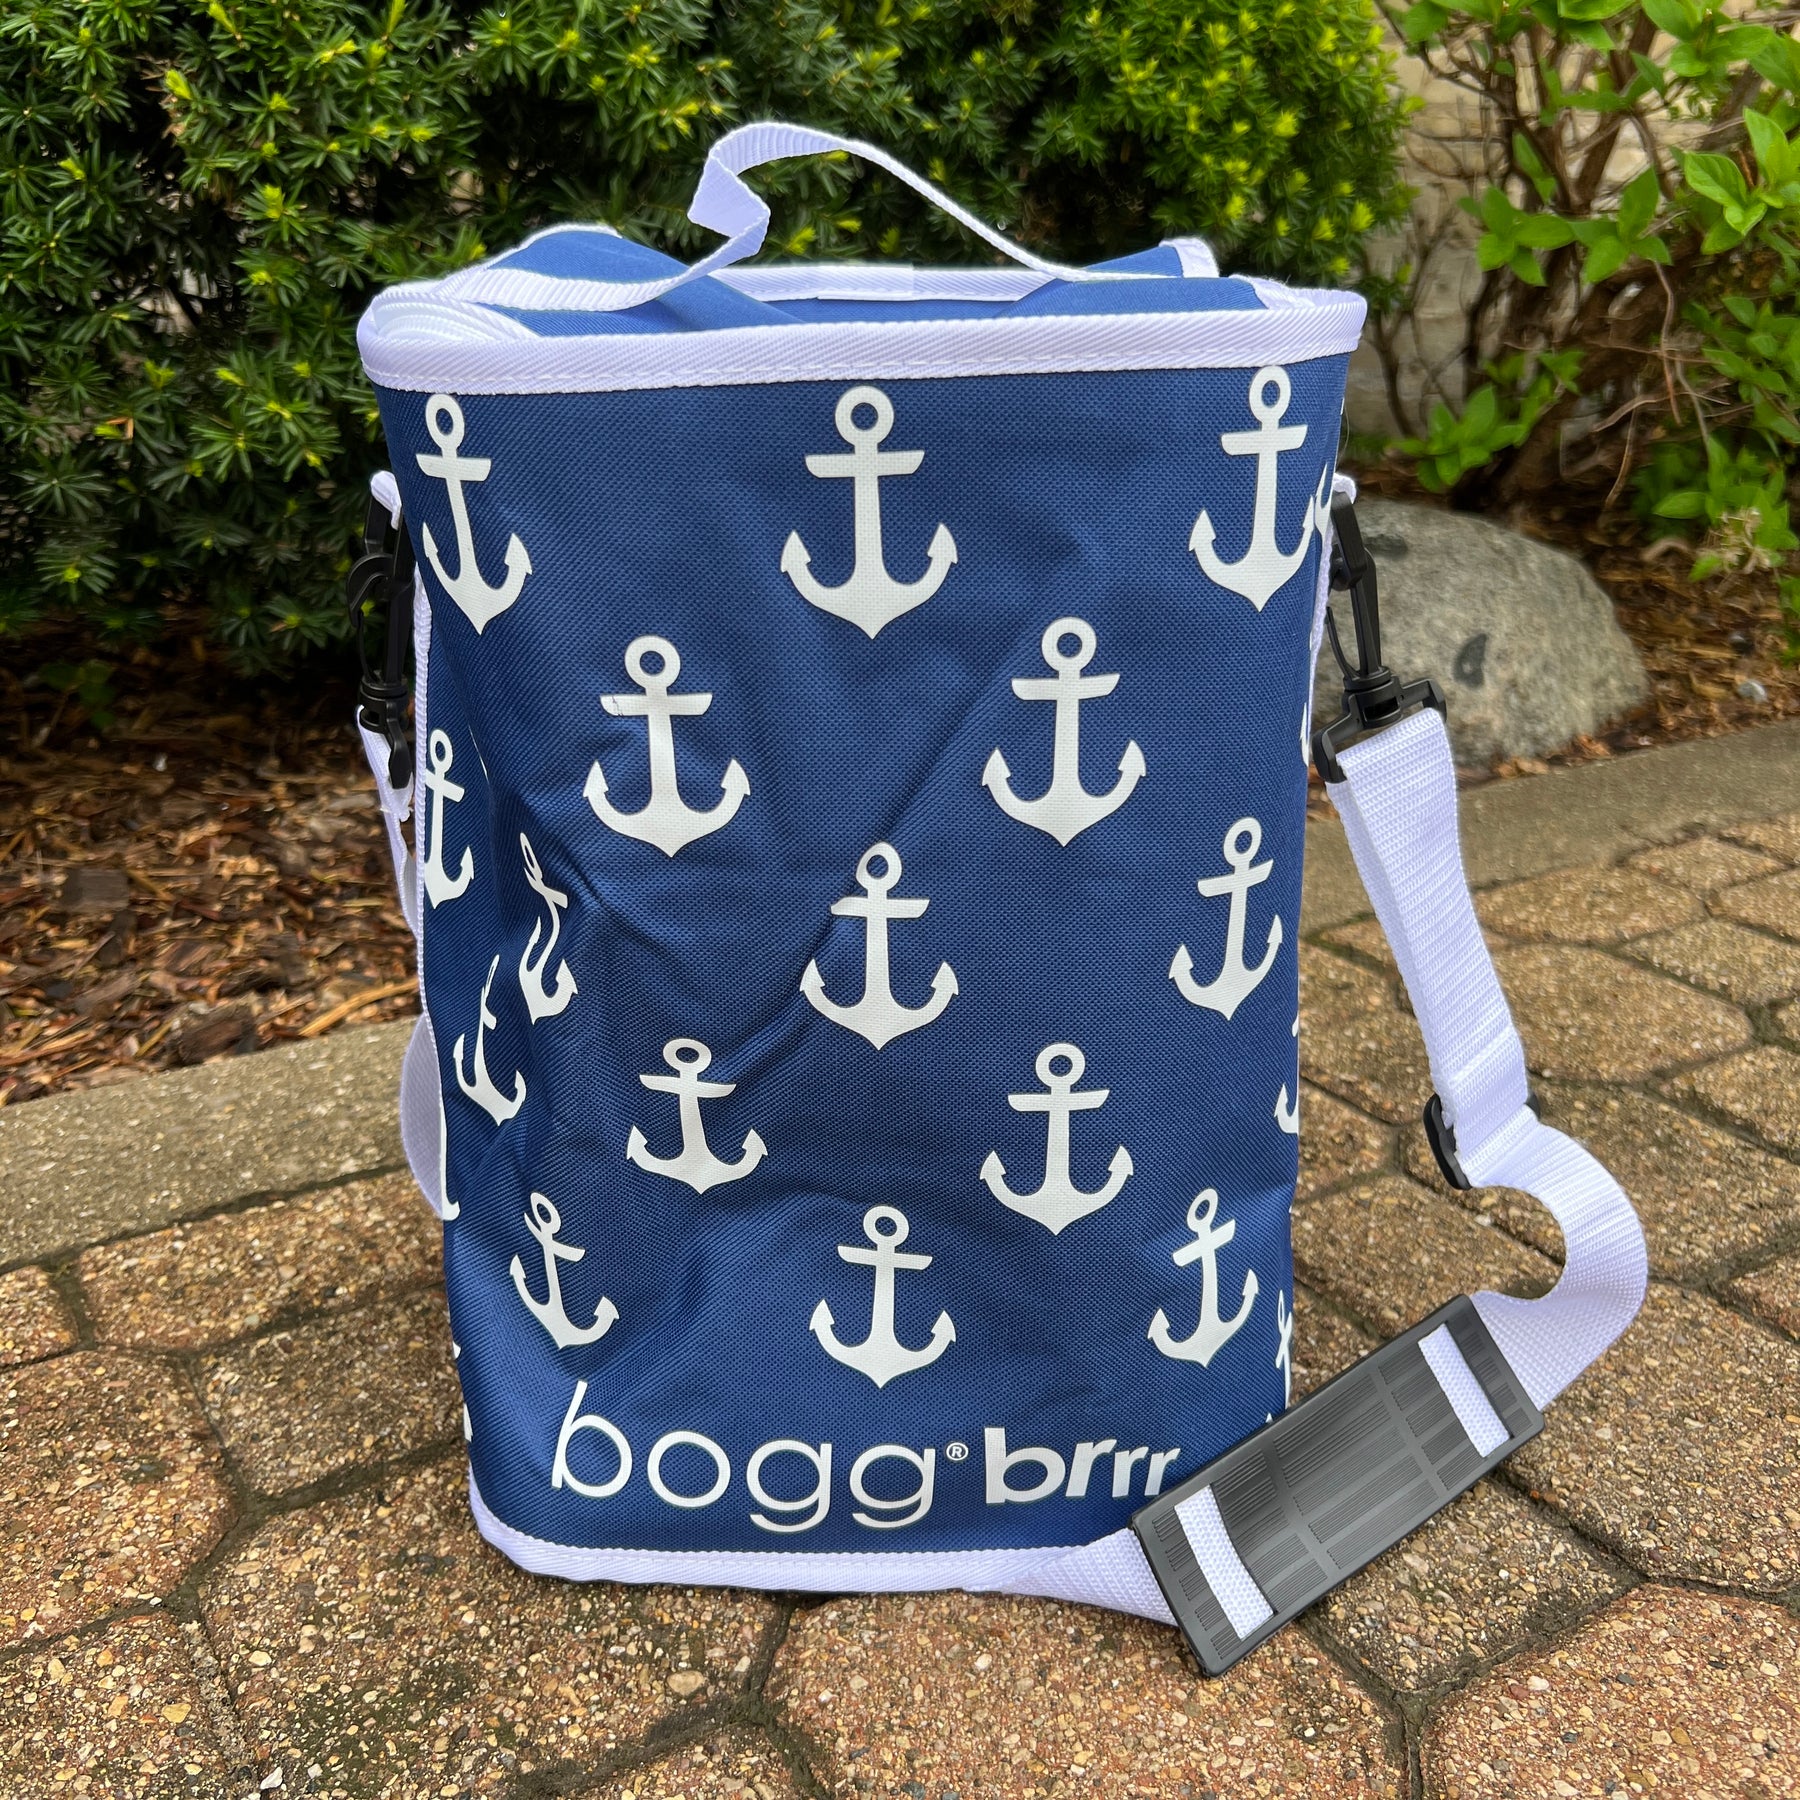 J&D Designs - BOGG BAG Brrrr, COOLER INSERTS for BOGG!